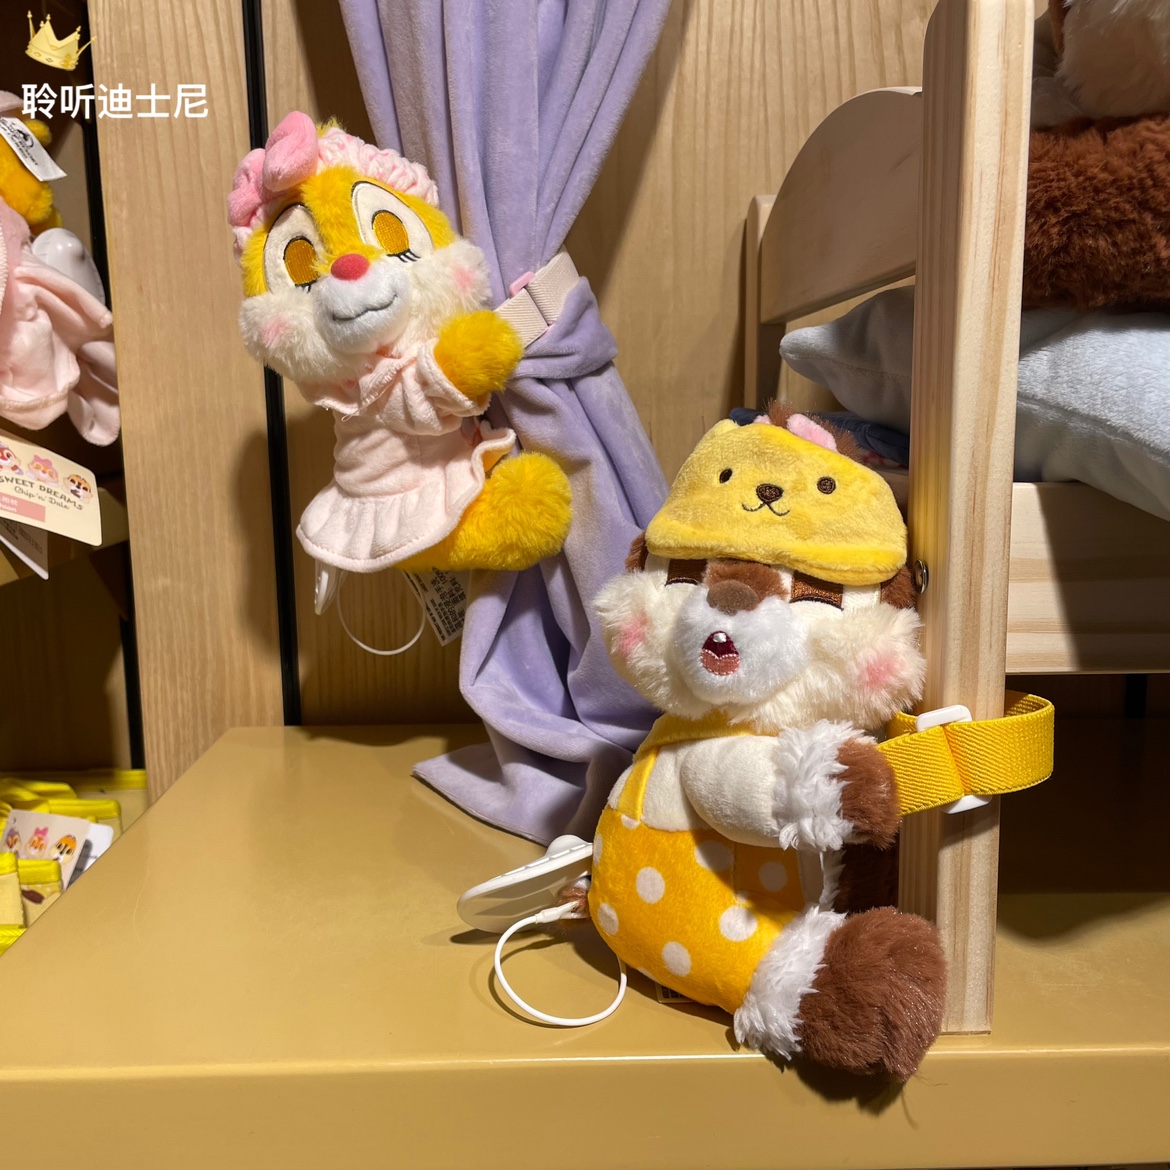 上海迪士尼国内代购奇奇蒂蒂克莉丝卡通毛绒抱抱玩偶窗帘扣礼物品